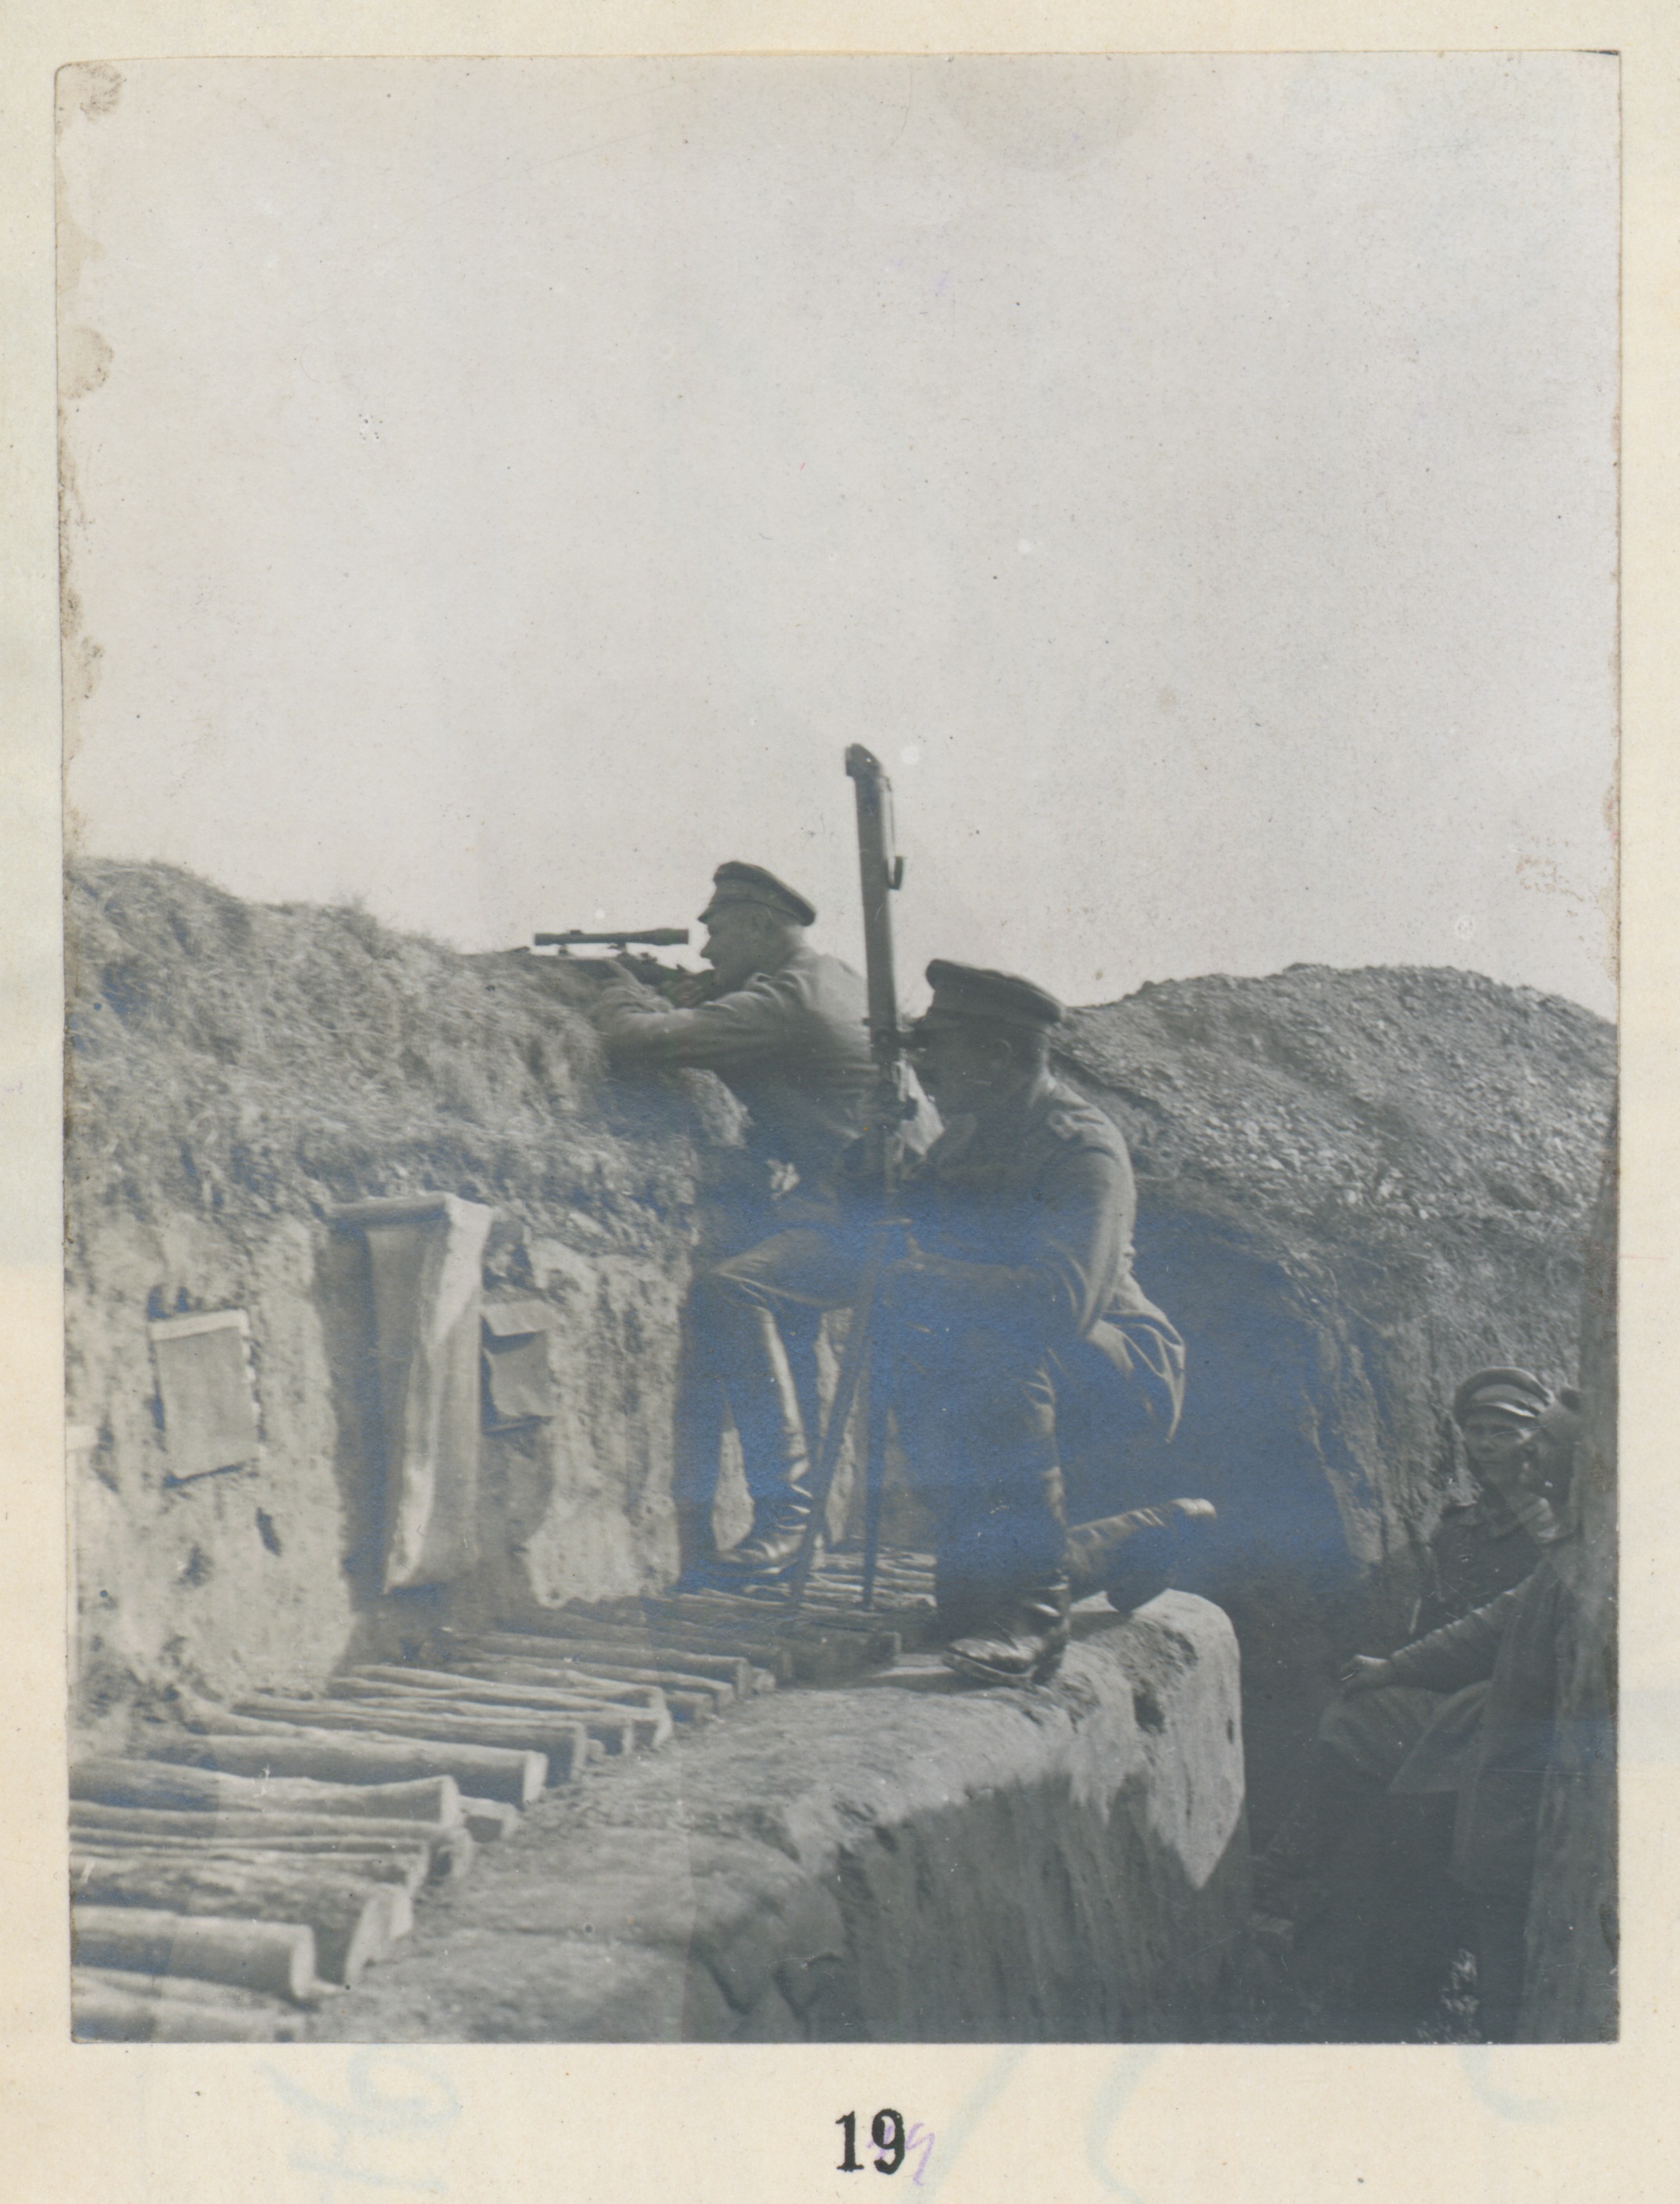  Photographie d’un tireur d’élite dans une tranchée du 111e régiment d’infanterie de réserve (RIR) en 1915 (Source: Landesarchiv BW, GLAK 456 F 55/201, Foto 84)